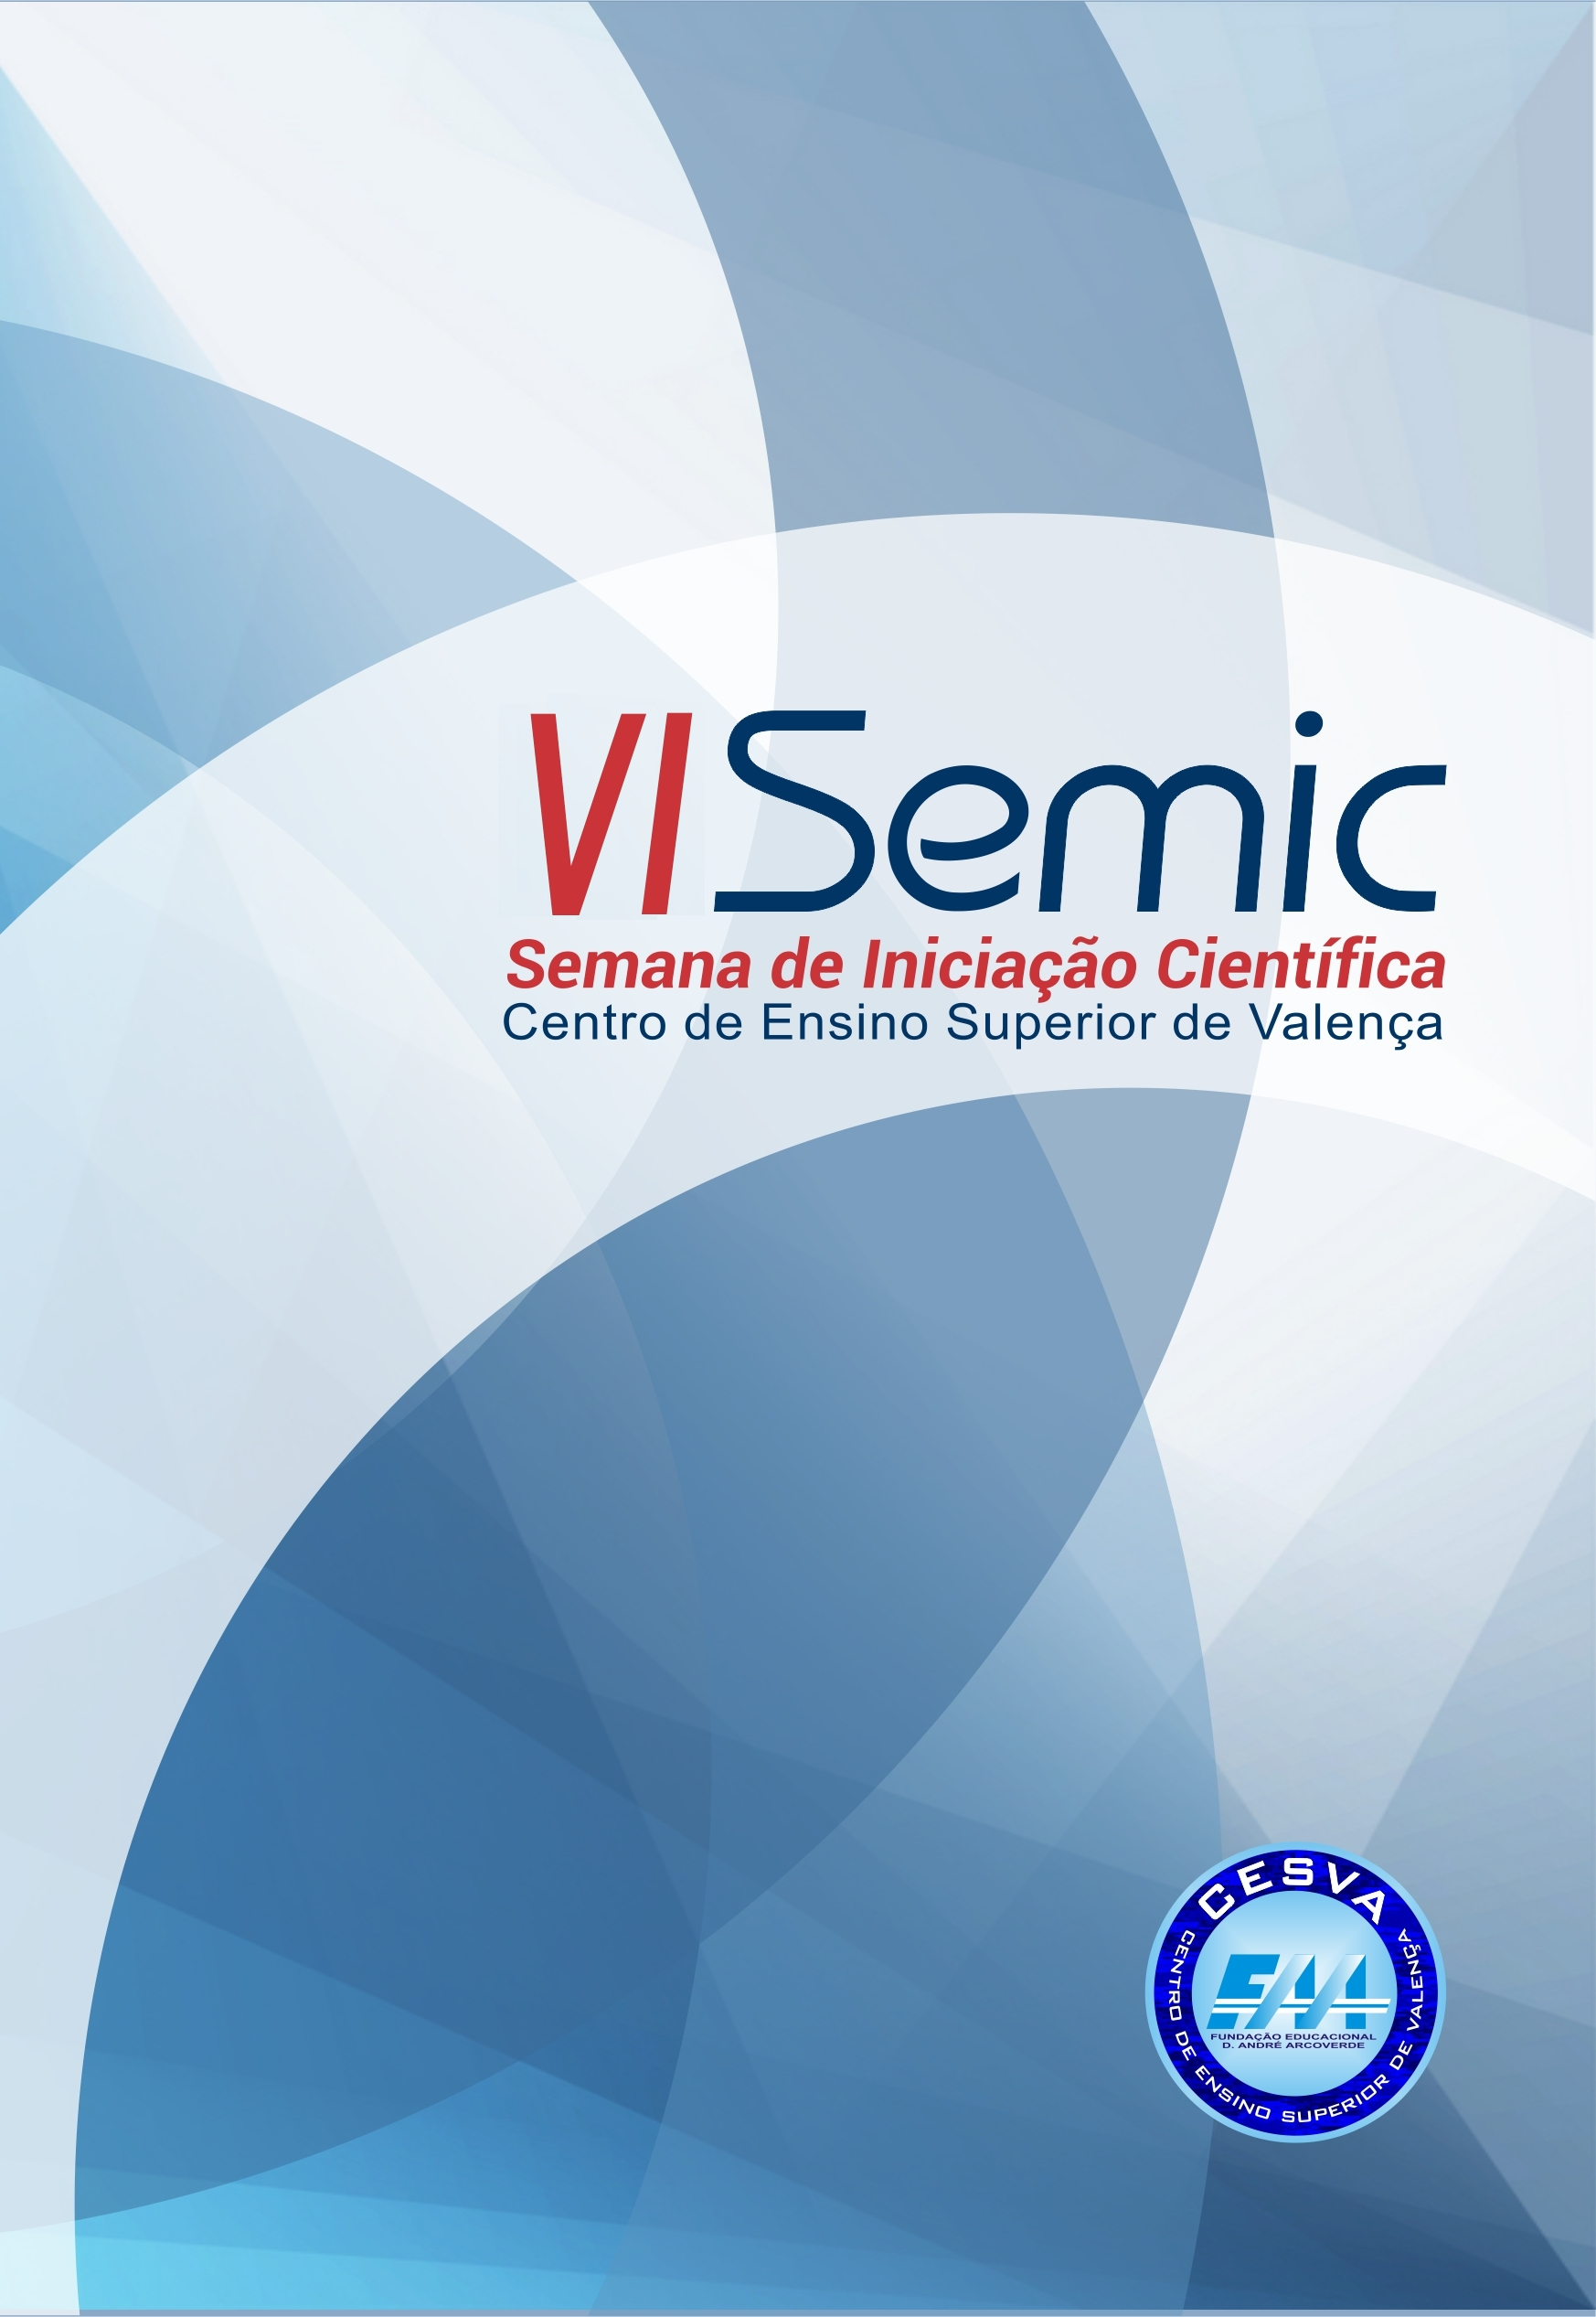 					Visualizar 2018: VI SEMIC - Semana de Iniciação Científica
				